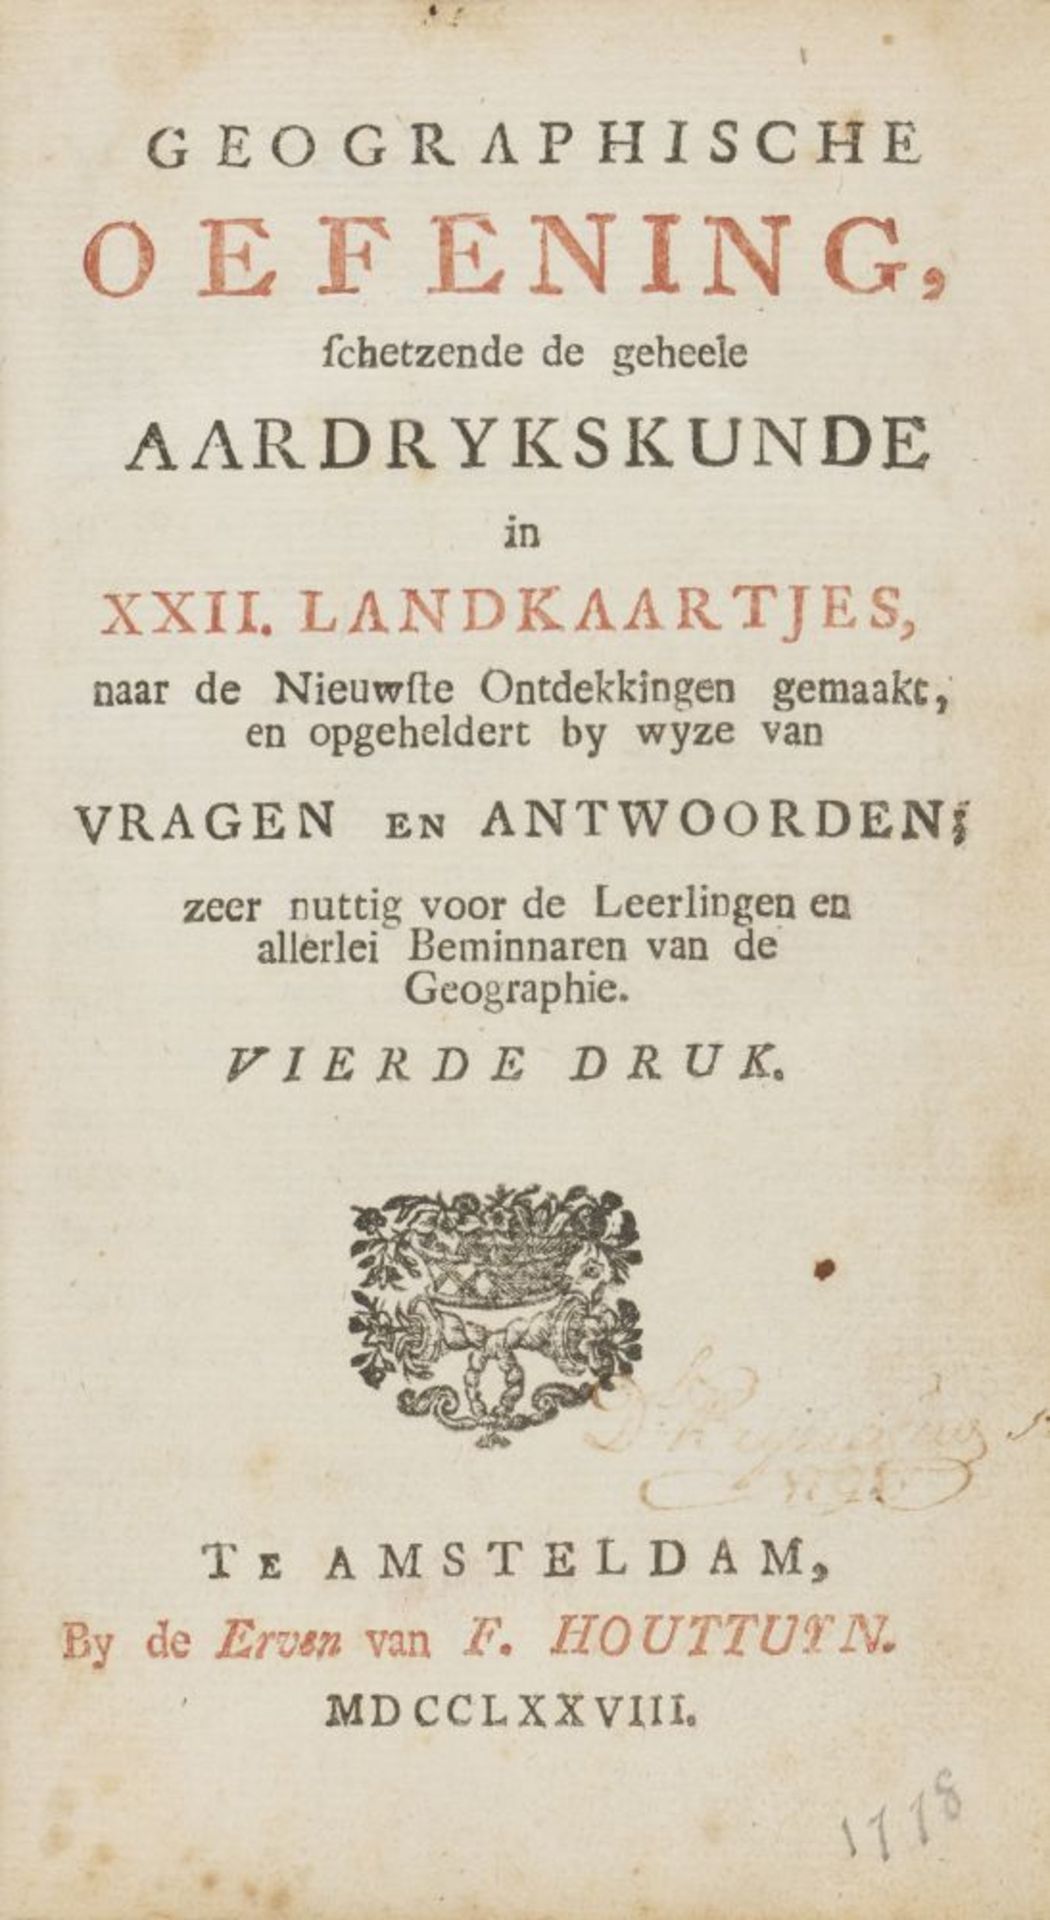 F. Houttuyn, Geographische oefening in XXII landkaartjes. 4. Aufl. Amsterdam 1778. - Bild 2 aus 3